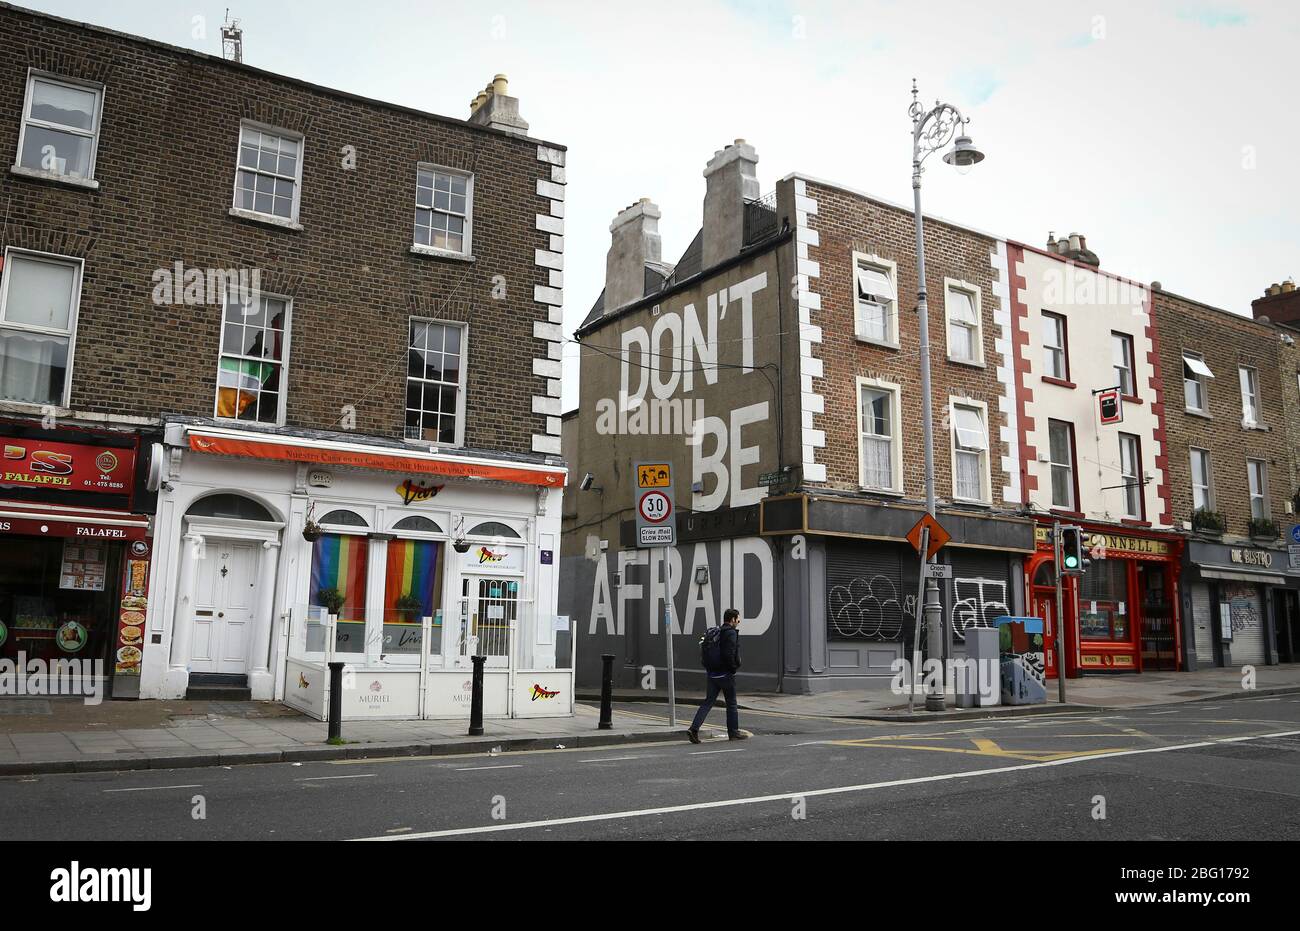 Dublin, Irland - 19. April 2020: Wandgemälde am Richmond Place, Portobello des Dubliner Künstlers Maser von Seamus Heaneys letzten Worten, ‘Noli timere’. Stockfoto